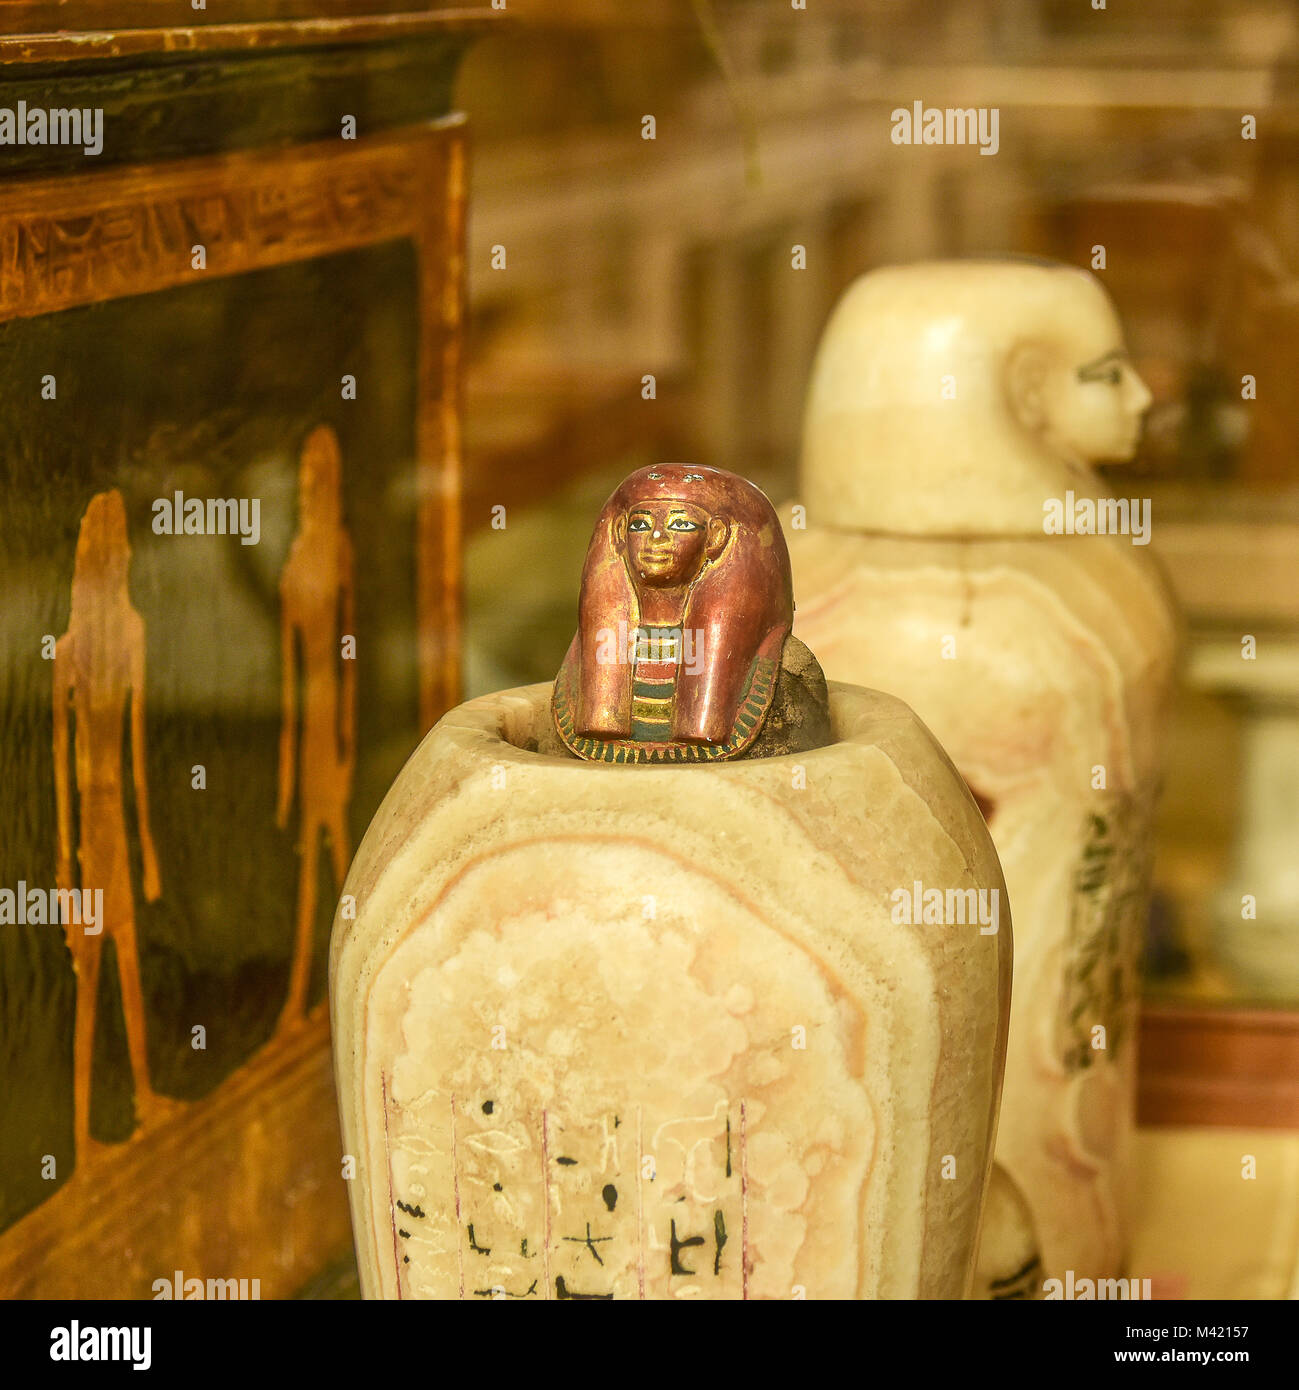 Figuren geschnitzt in Marmor im Museum von Kairo, Kairo, Ägypten. Selten bemerkt Objekte der alten ägyptischen Kunstwerke. Stockfoto